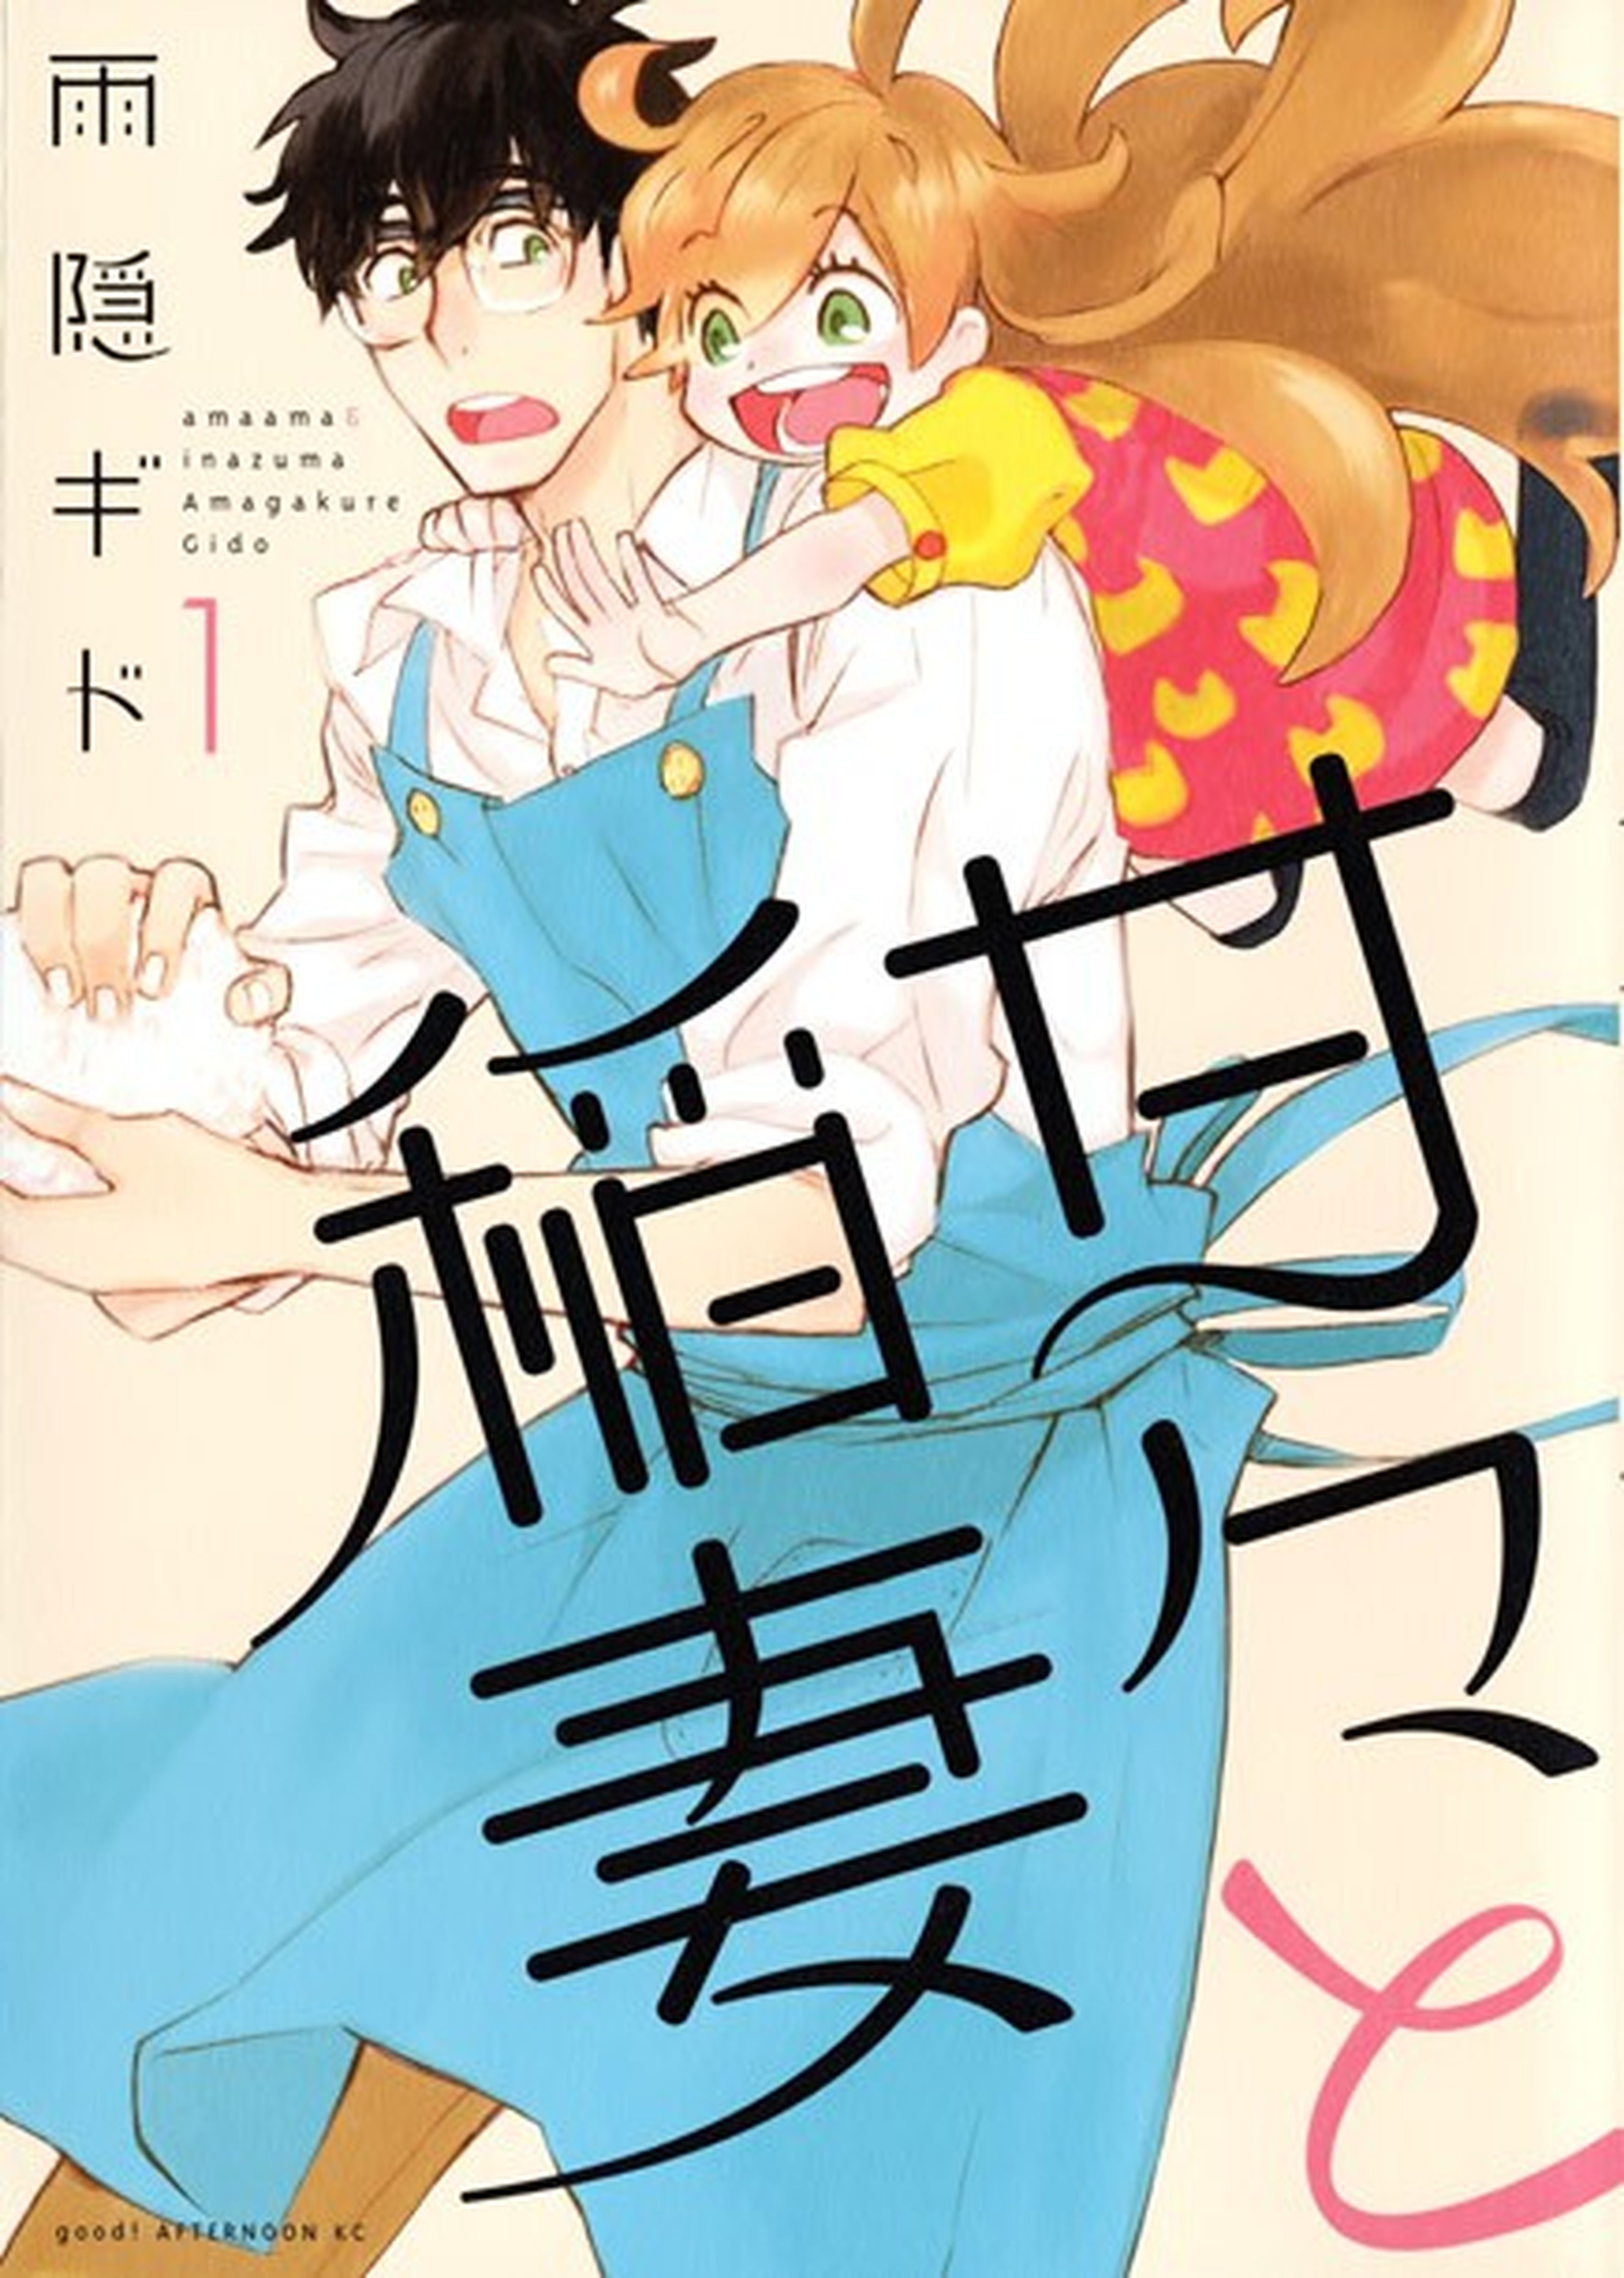 Mangas recomendados por los libreros nipones